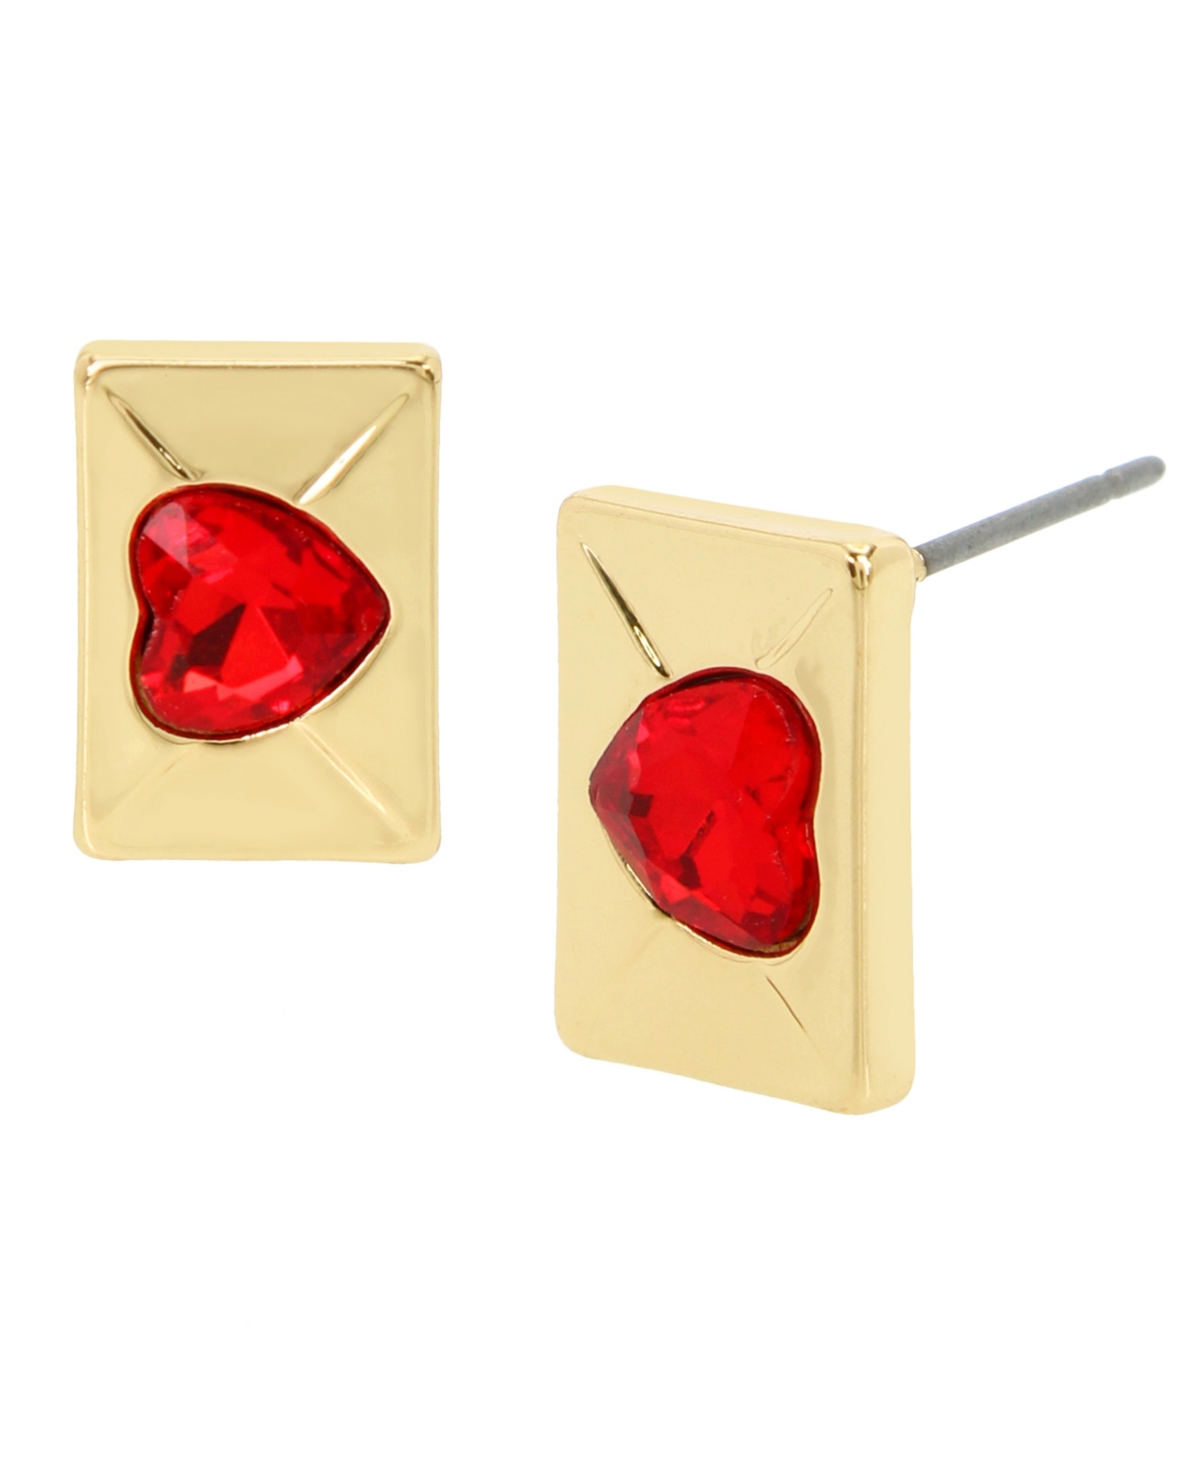 Faux Stone Heart Envelope Stud Earrings - Red, Gold